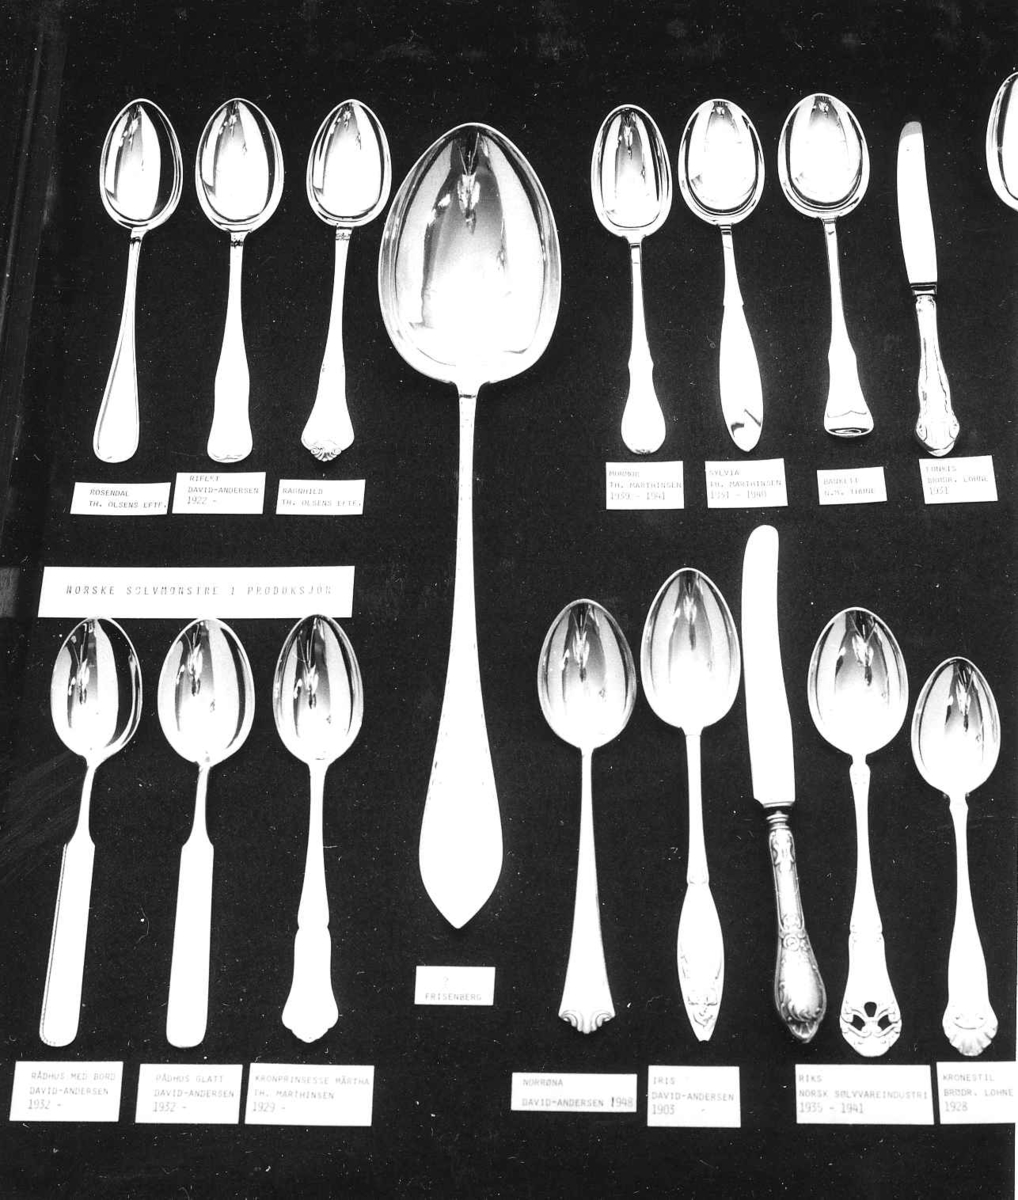 Spisebestikk i sølv fra 1900-tallet. Norske sølvmønstre. Utstilt på Oslo Gullsmedlaugs 375-års jubileumsutstilling på OK. 1978.